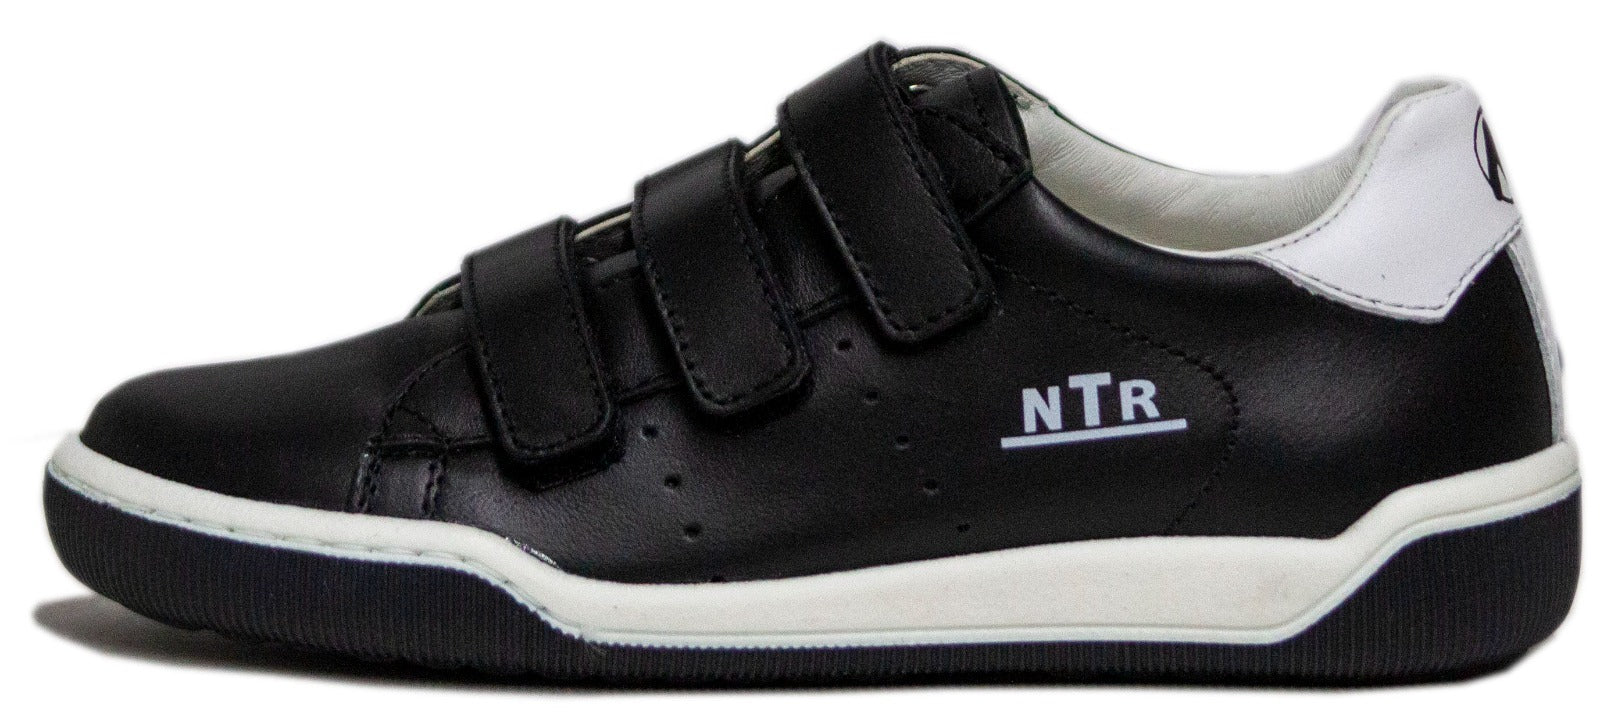 Naturino Boy's Shoes CLIFF Black/white